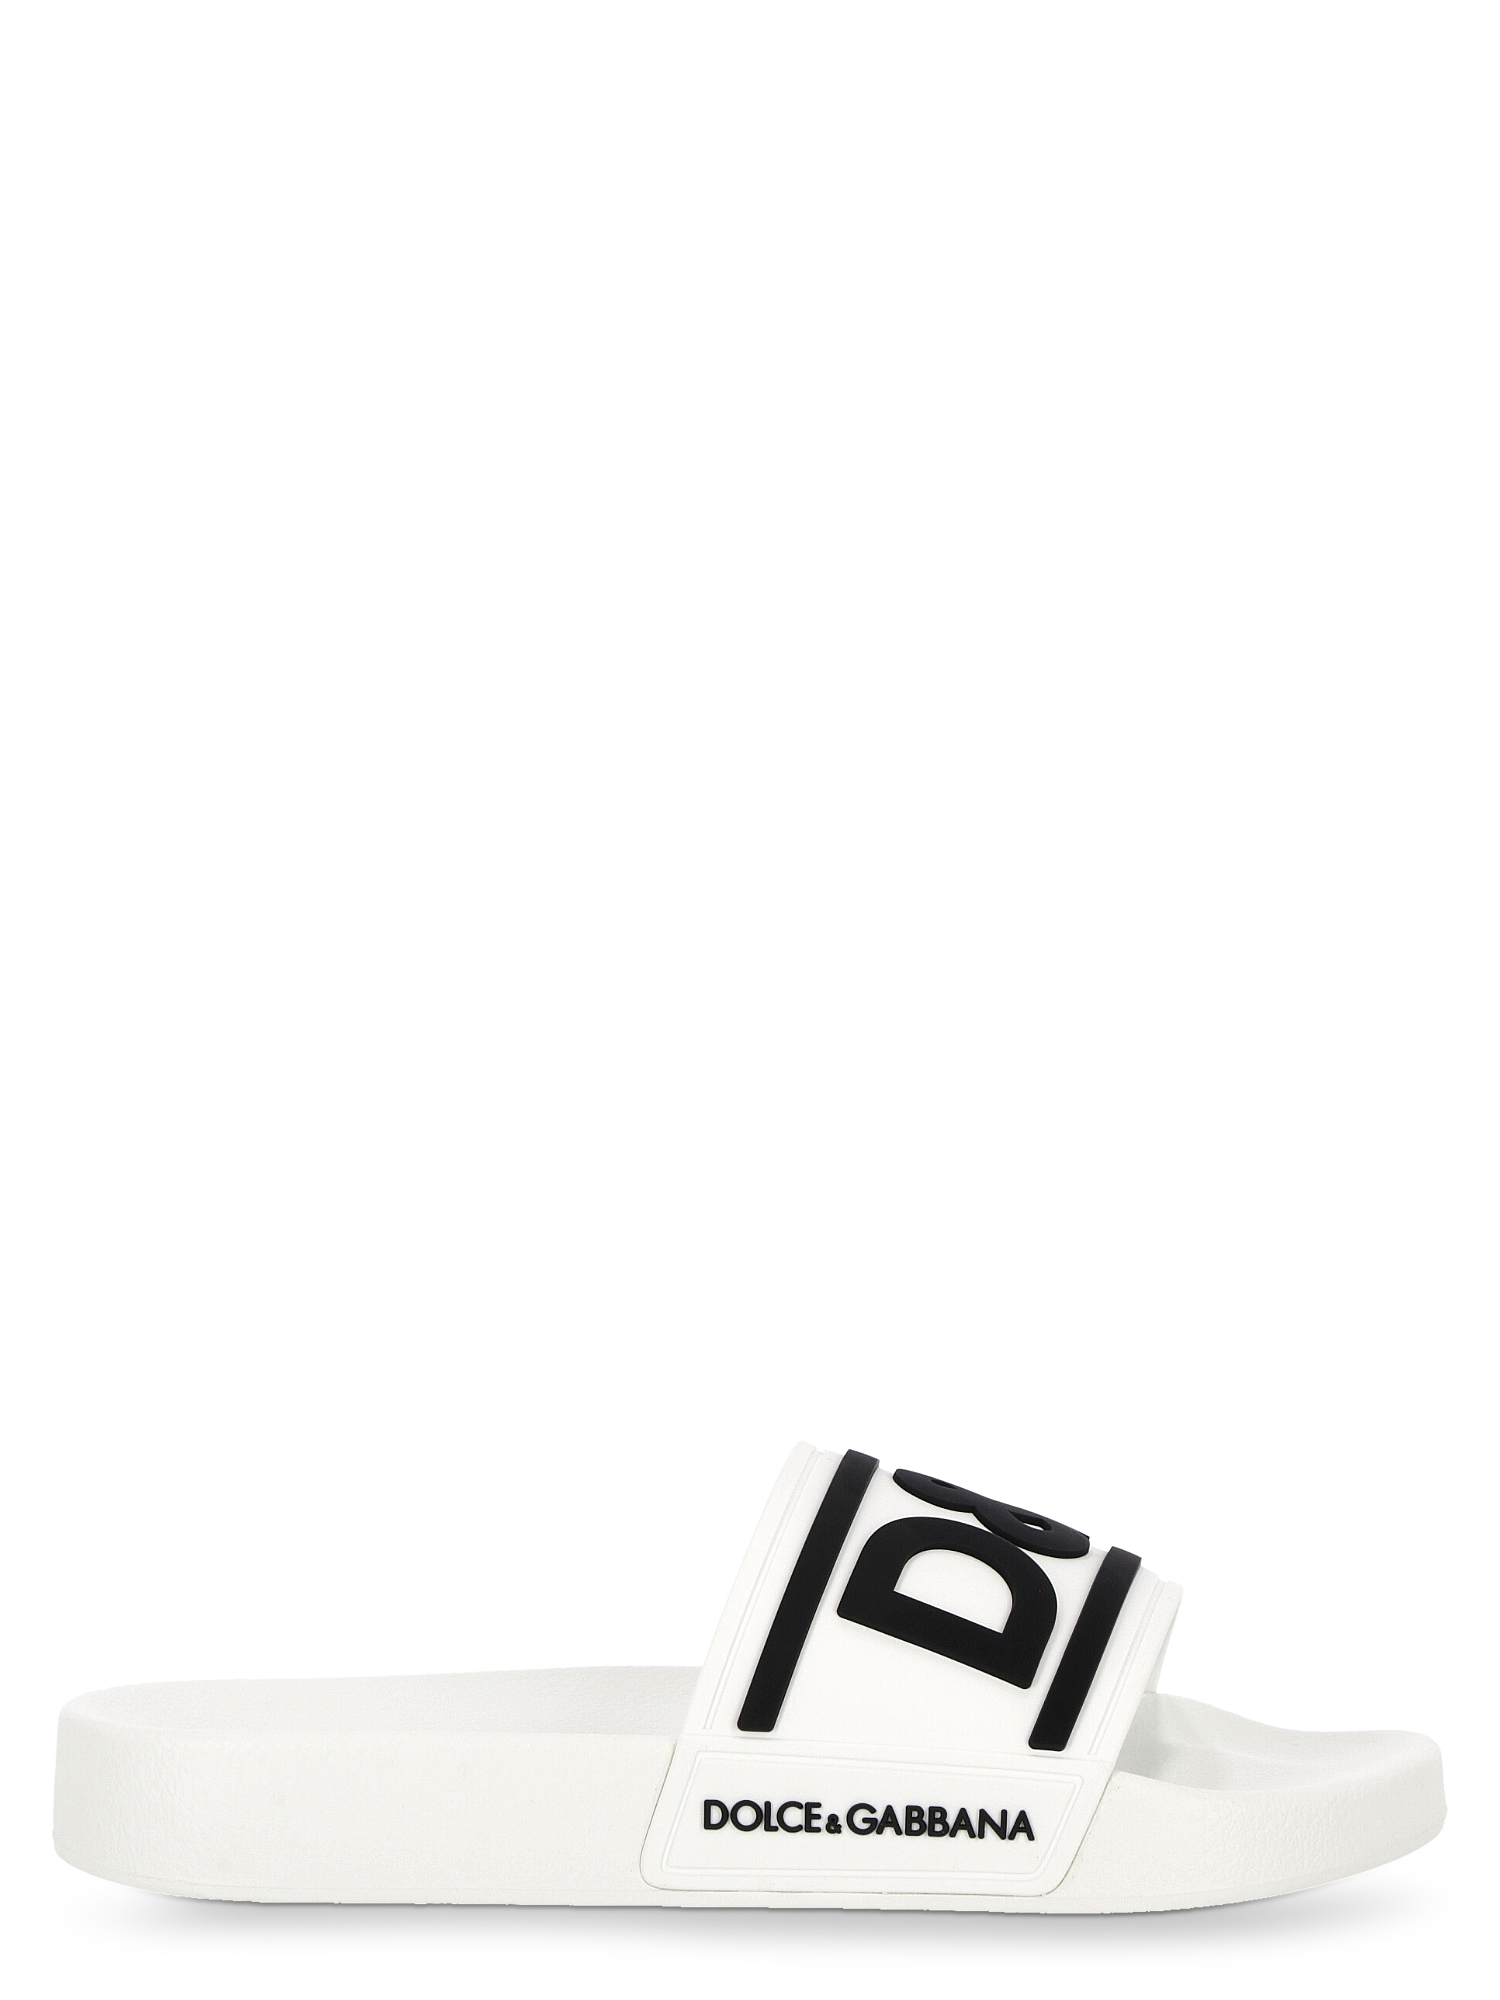 Sandales Pour Femme - Dolce & Gabbana - En Synthetic Fibers White - Taille: IT 35 - EU 35